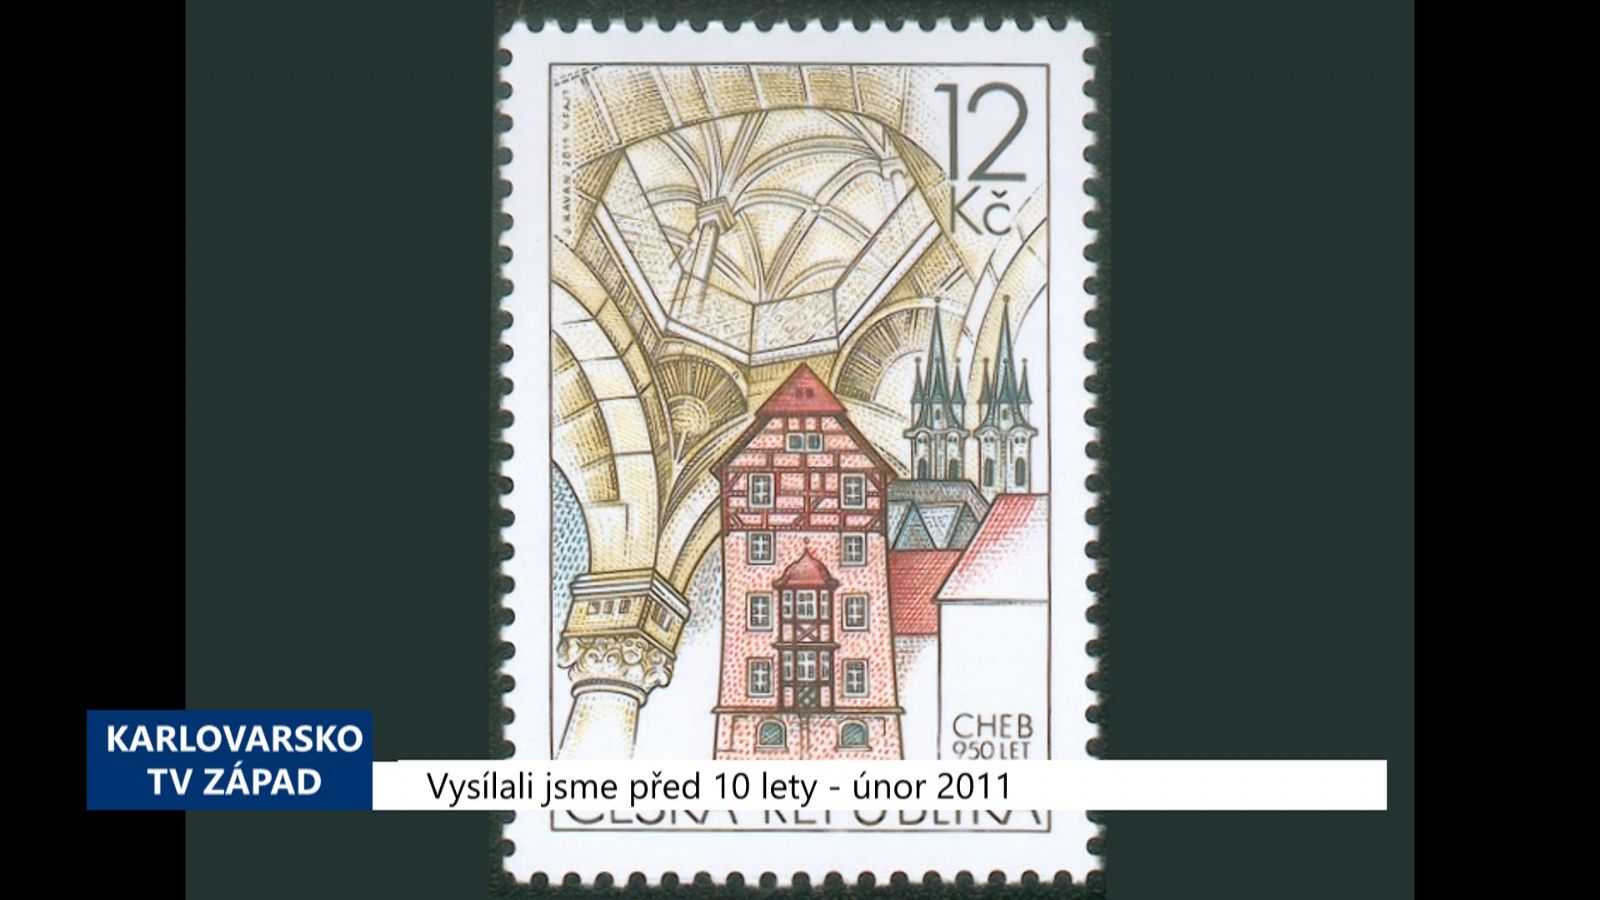 2011 – Cheb: Poštovní známka připomíná 950 let města (4301) (TV Západ)